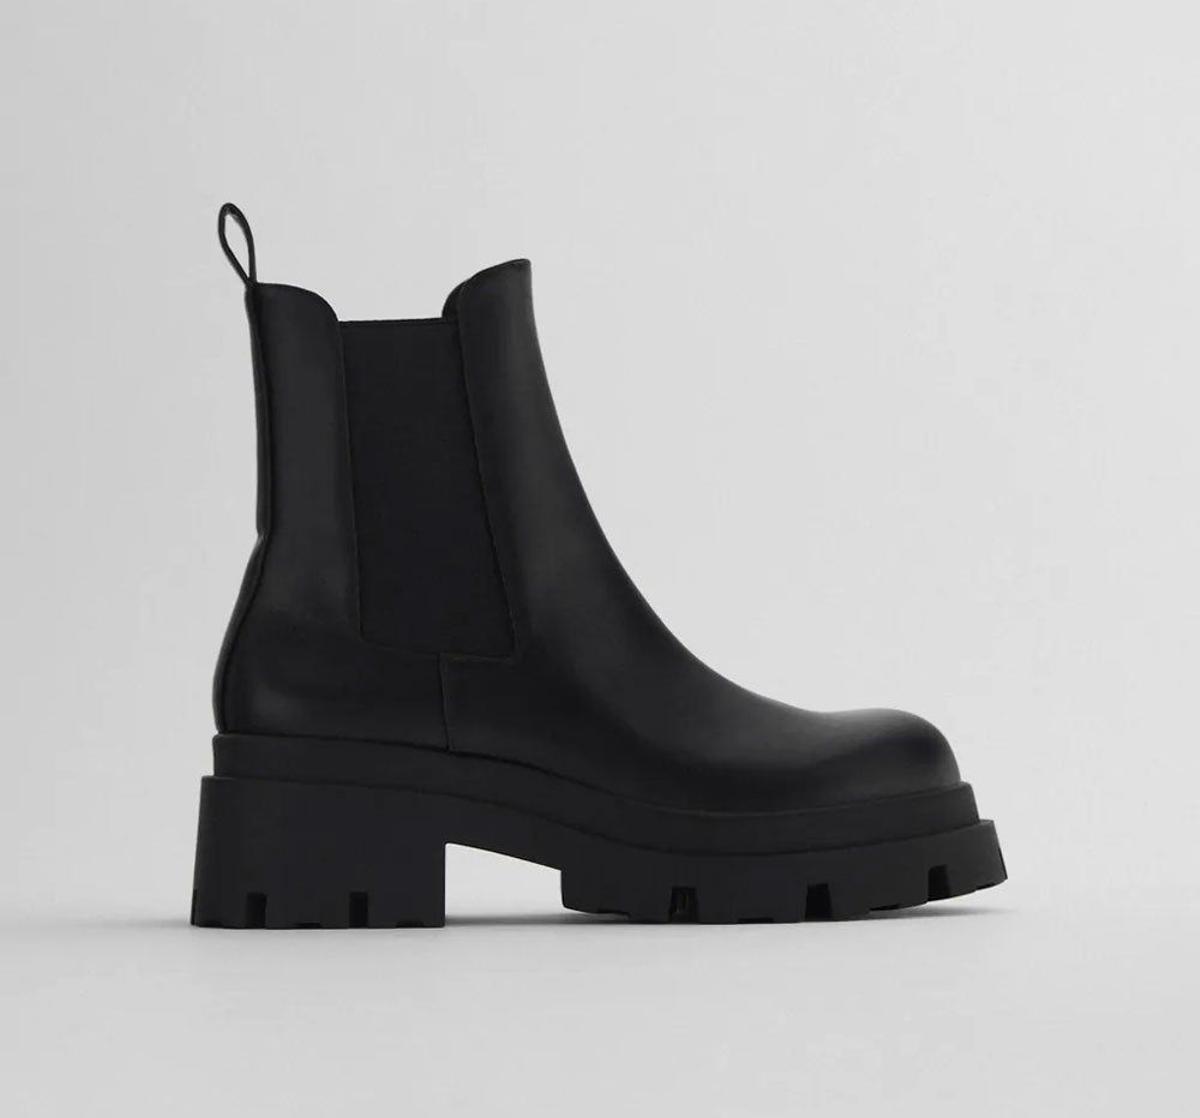 Botines negros con elástico y suela track de Zara. (Precio: 35,95 euros)